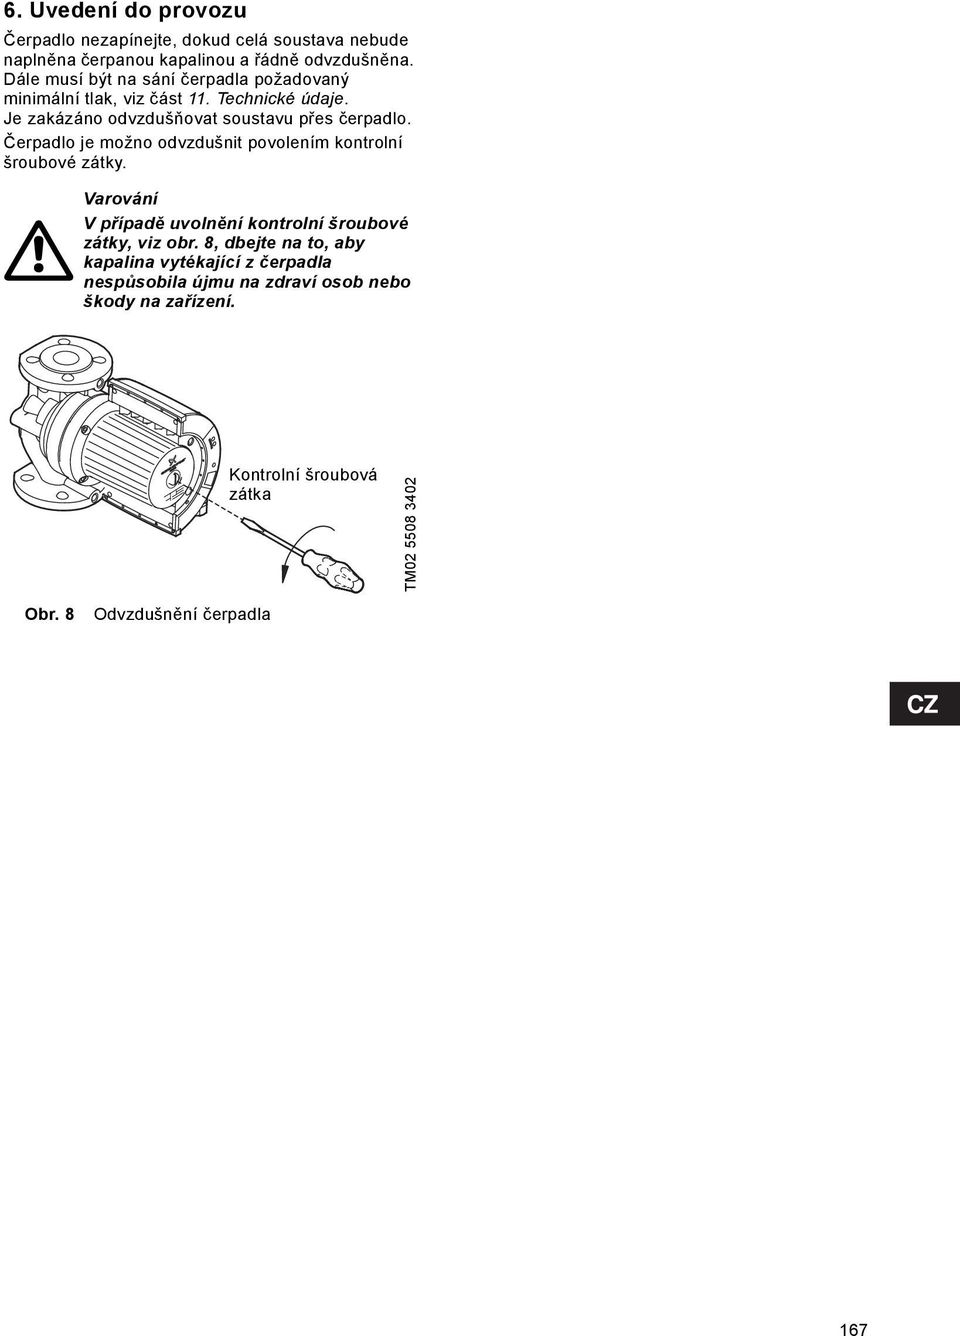 Čerpadlo je možno odvzdušnit povolením kontrolní šroubové zátky. Varování V případě uvolnění kontrolní šroubové zátky, viz obr.